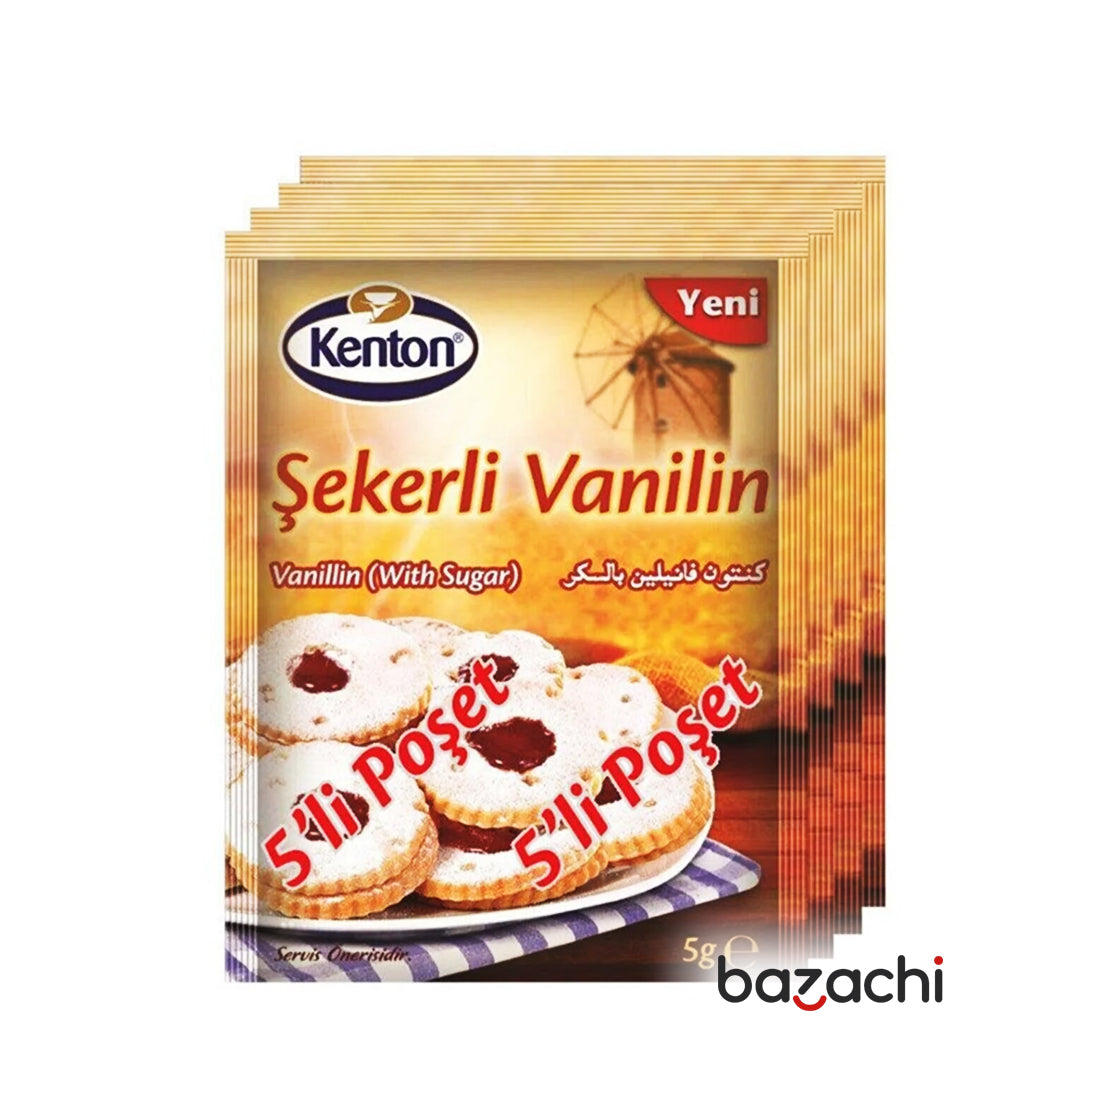 Kenton Vanillin With Sugar Sekerli Vanilin 5x5g